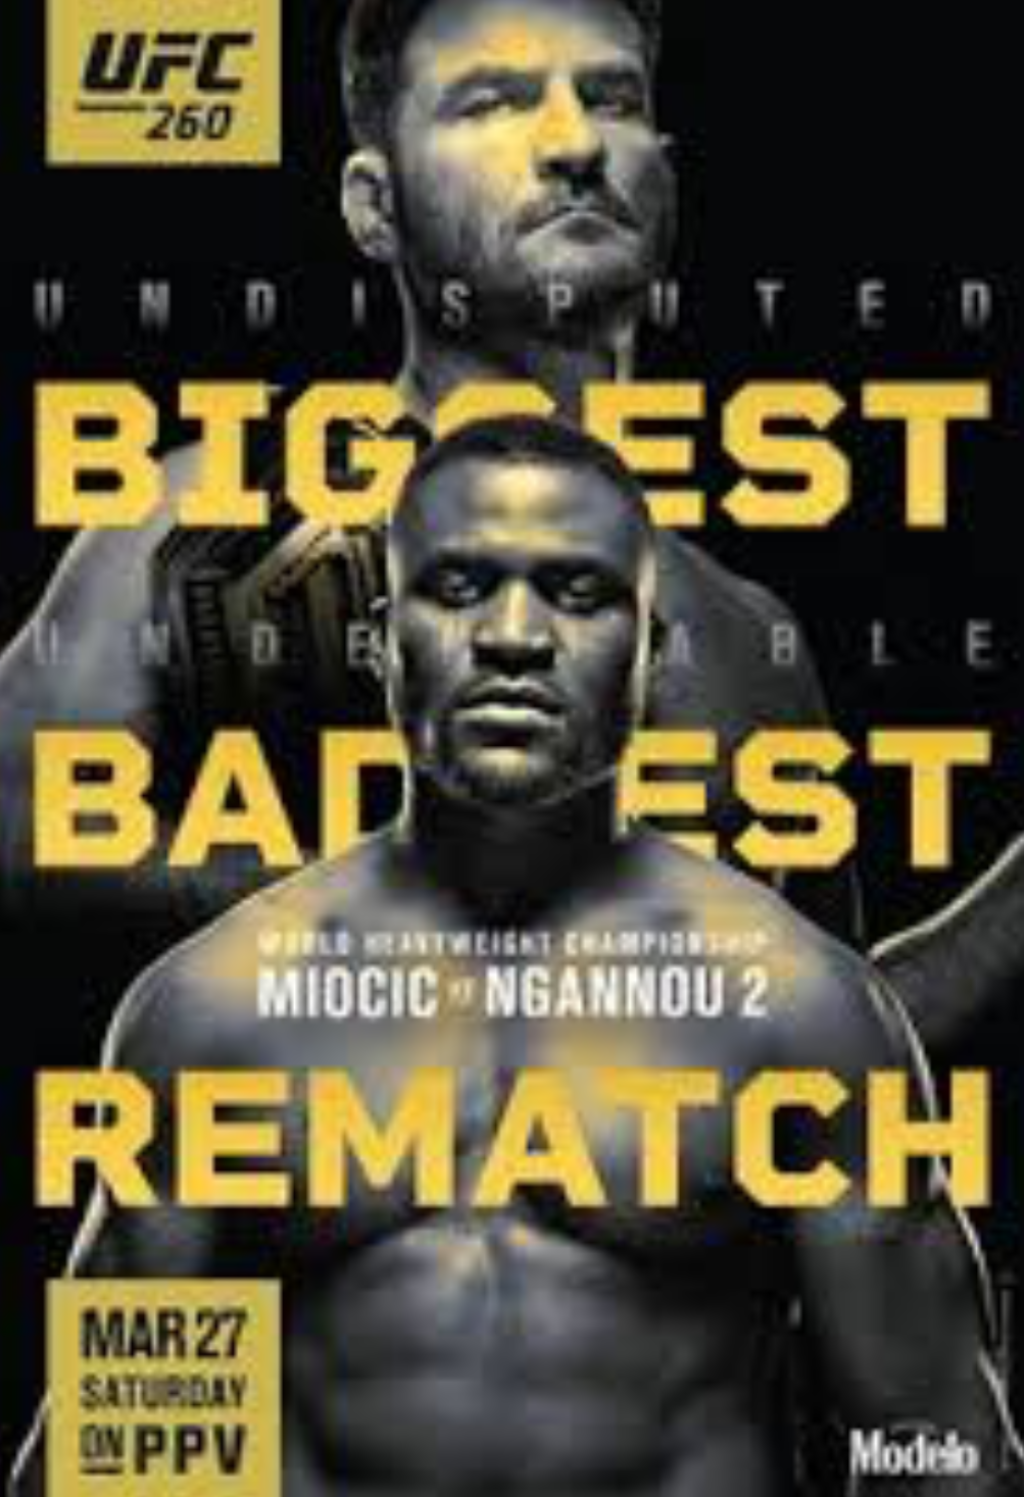 UFC 260 MIOCIC VS. NGANNOU 2